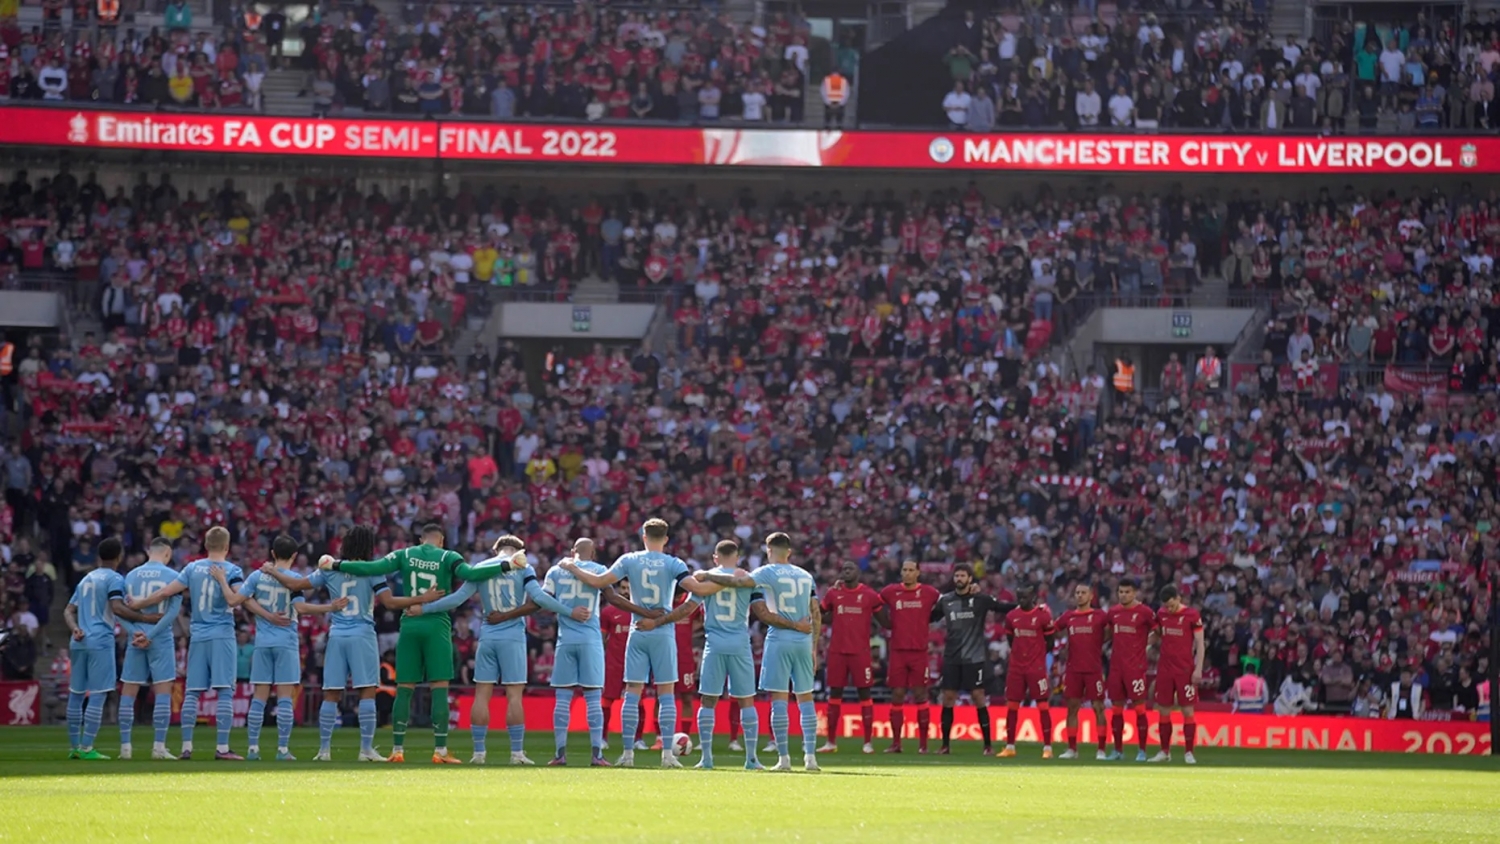 Manchester City xin lỗi Liverpool vì hành động đáng xấu hổ của người hâm mộ